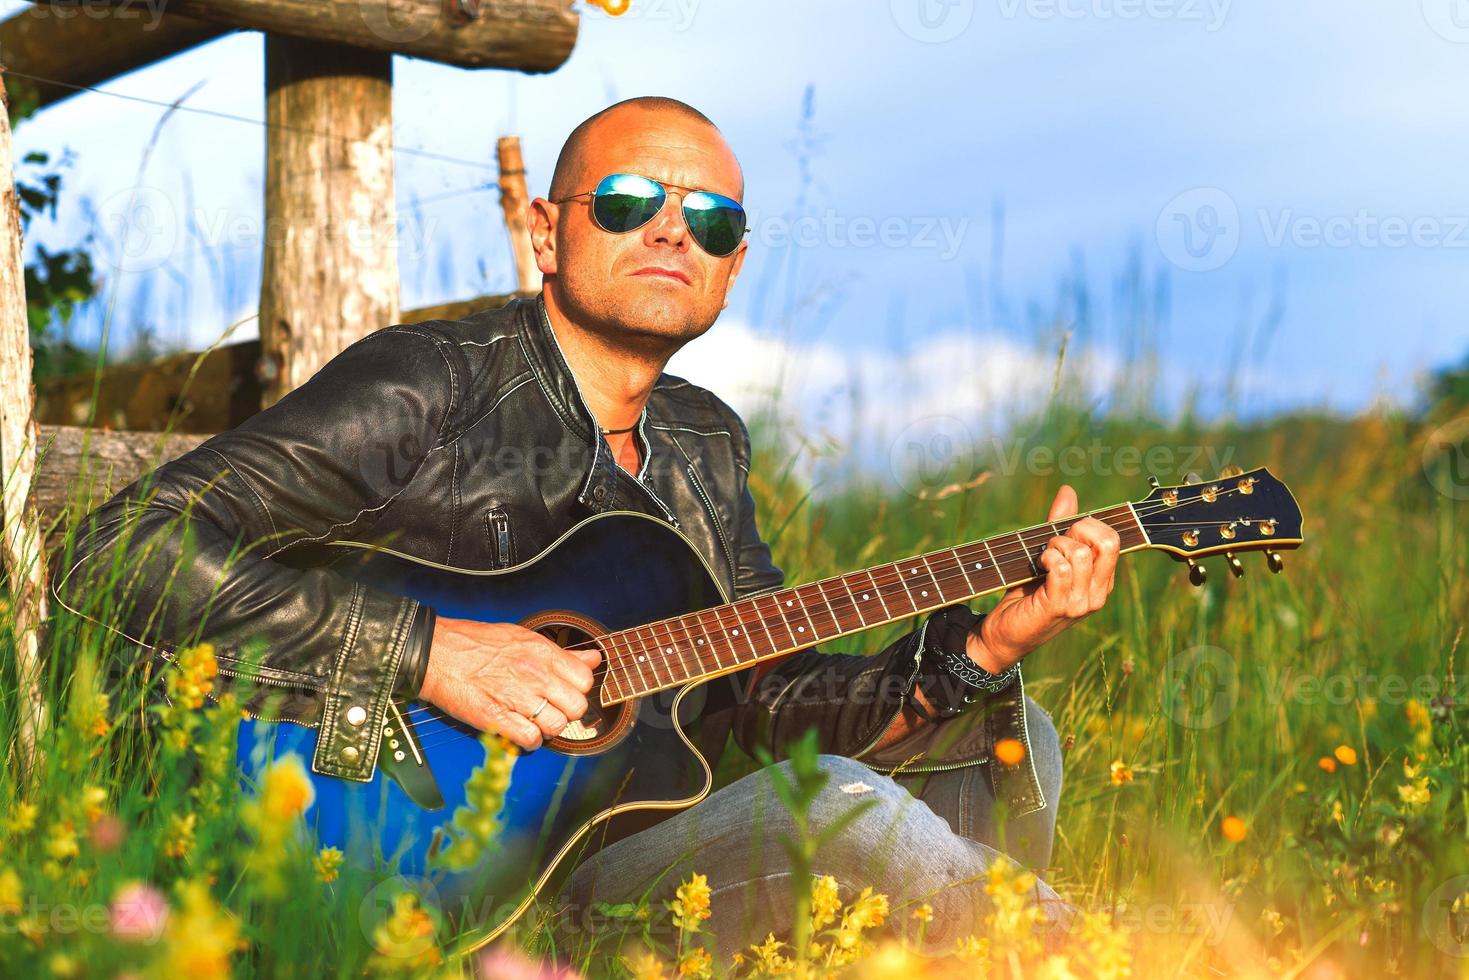 chanteur avec guitare joue seul dans un pré dans la nature photo